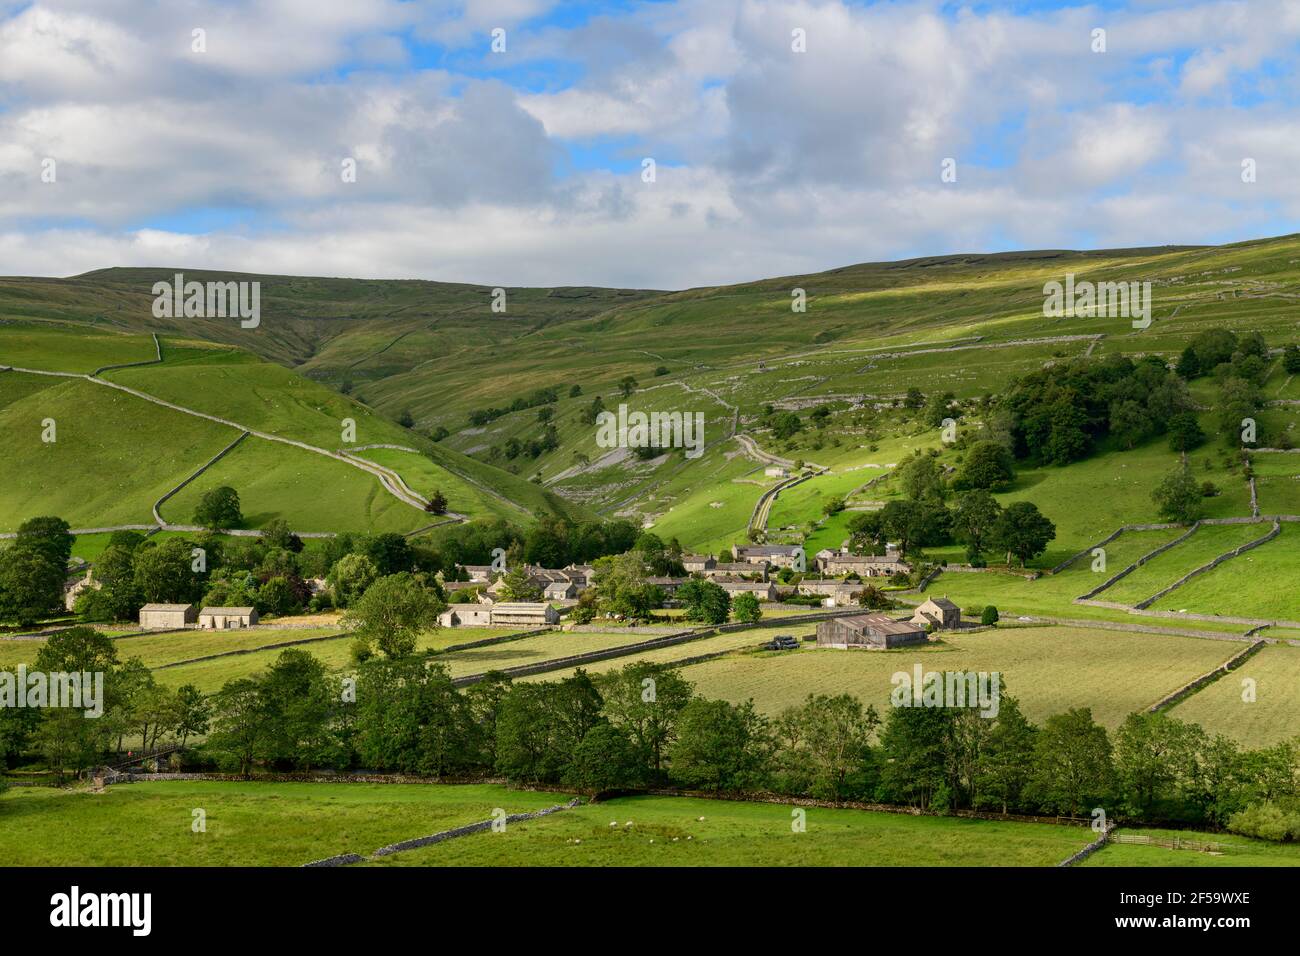 Village pittoresque de Dales (maisons en pierre) niché dans la vallée ensoleillée par les champs, les collines, les collines et les gorges abruptes - Starbotton, Yorkshire Angleterre Royaume-Uni. Banque D'Images